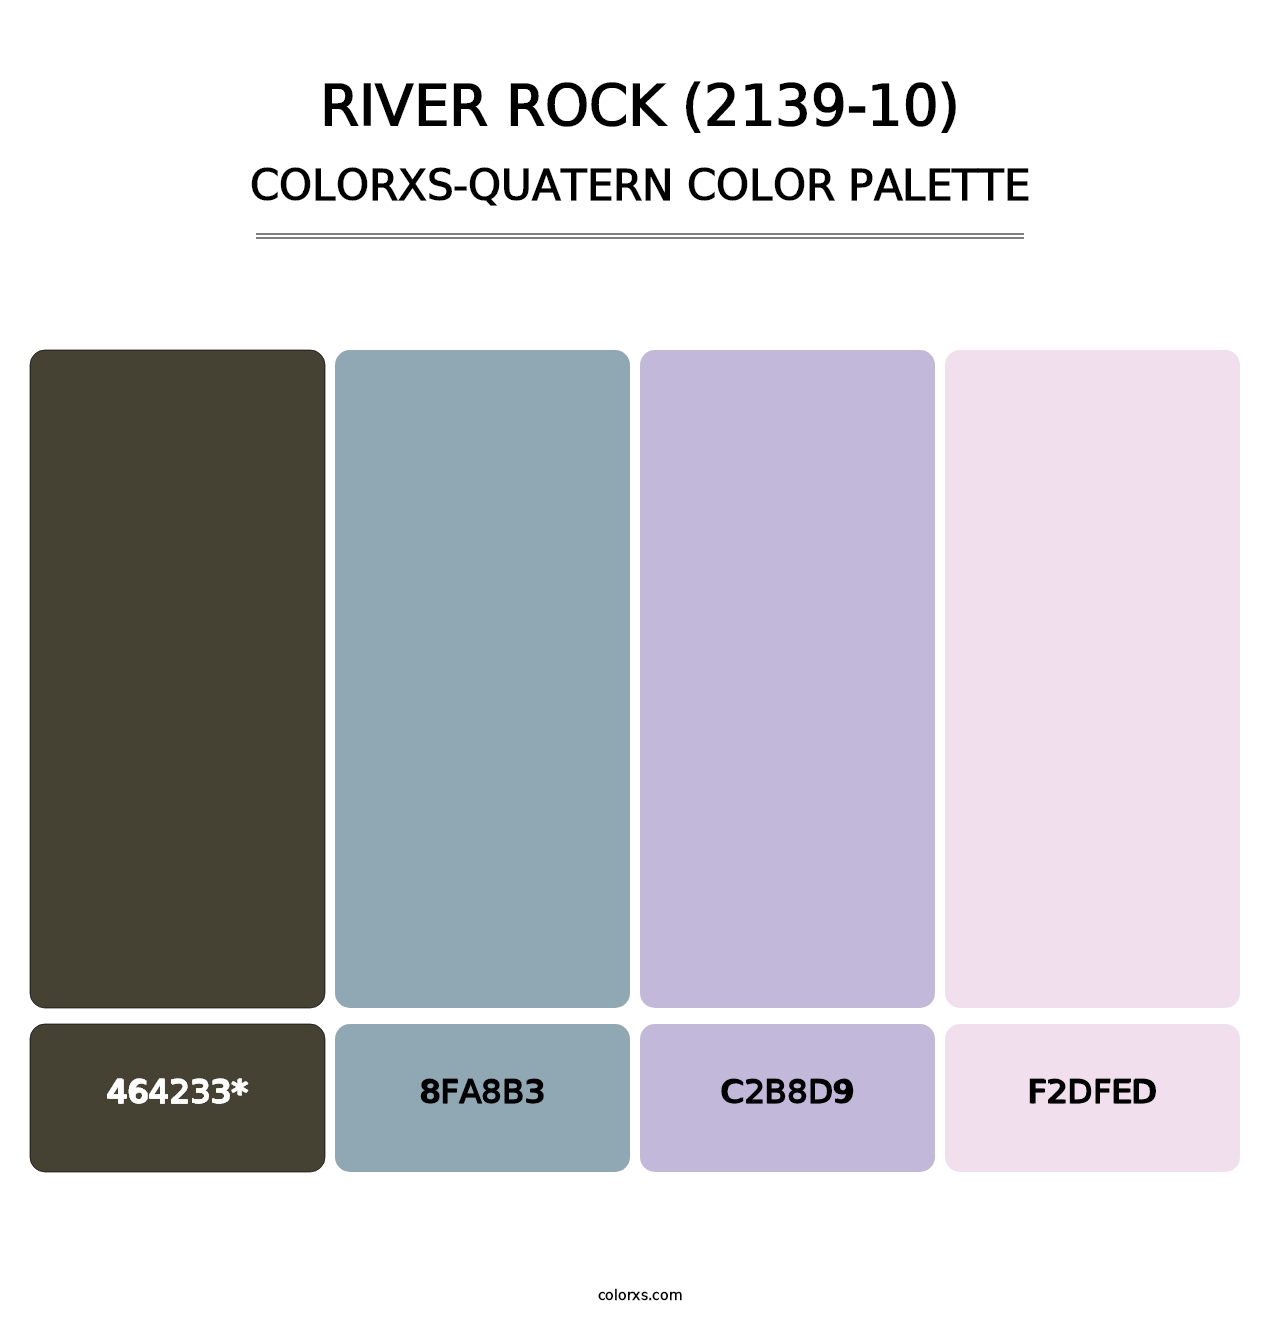 River Rock (2139-10) - Colorxs Quatern Palette